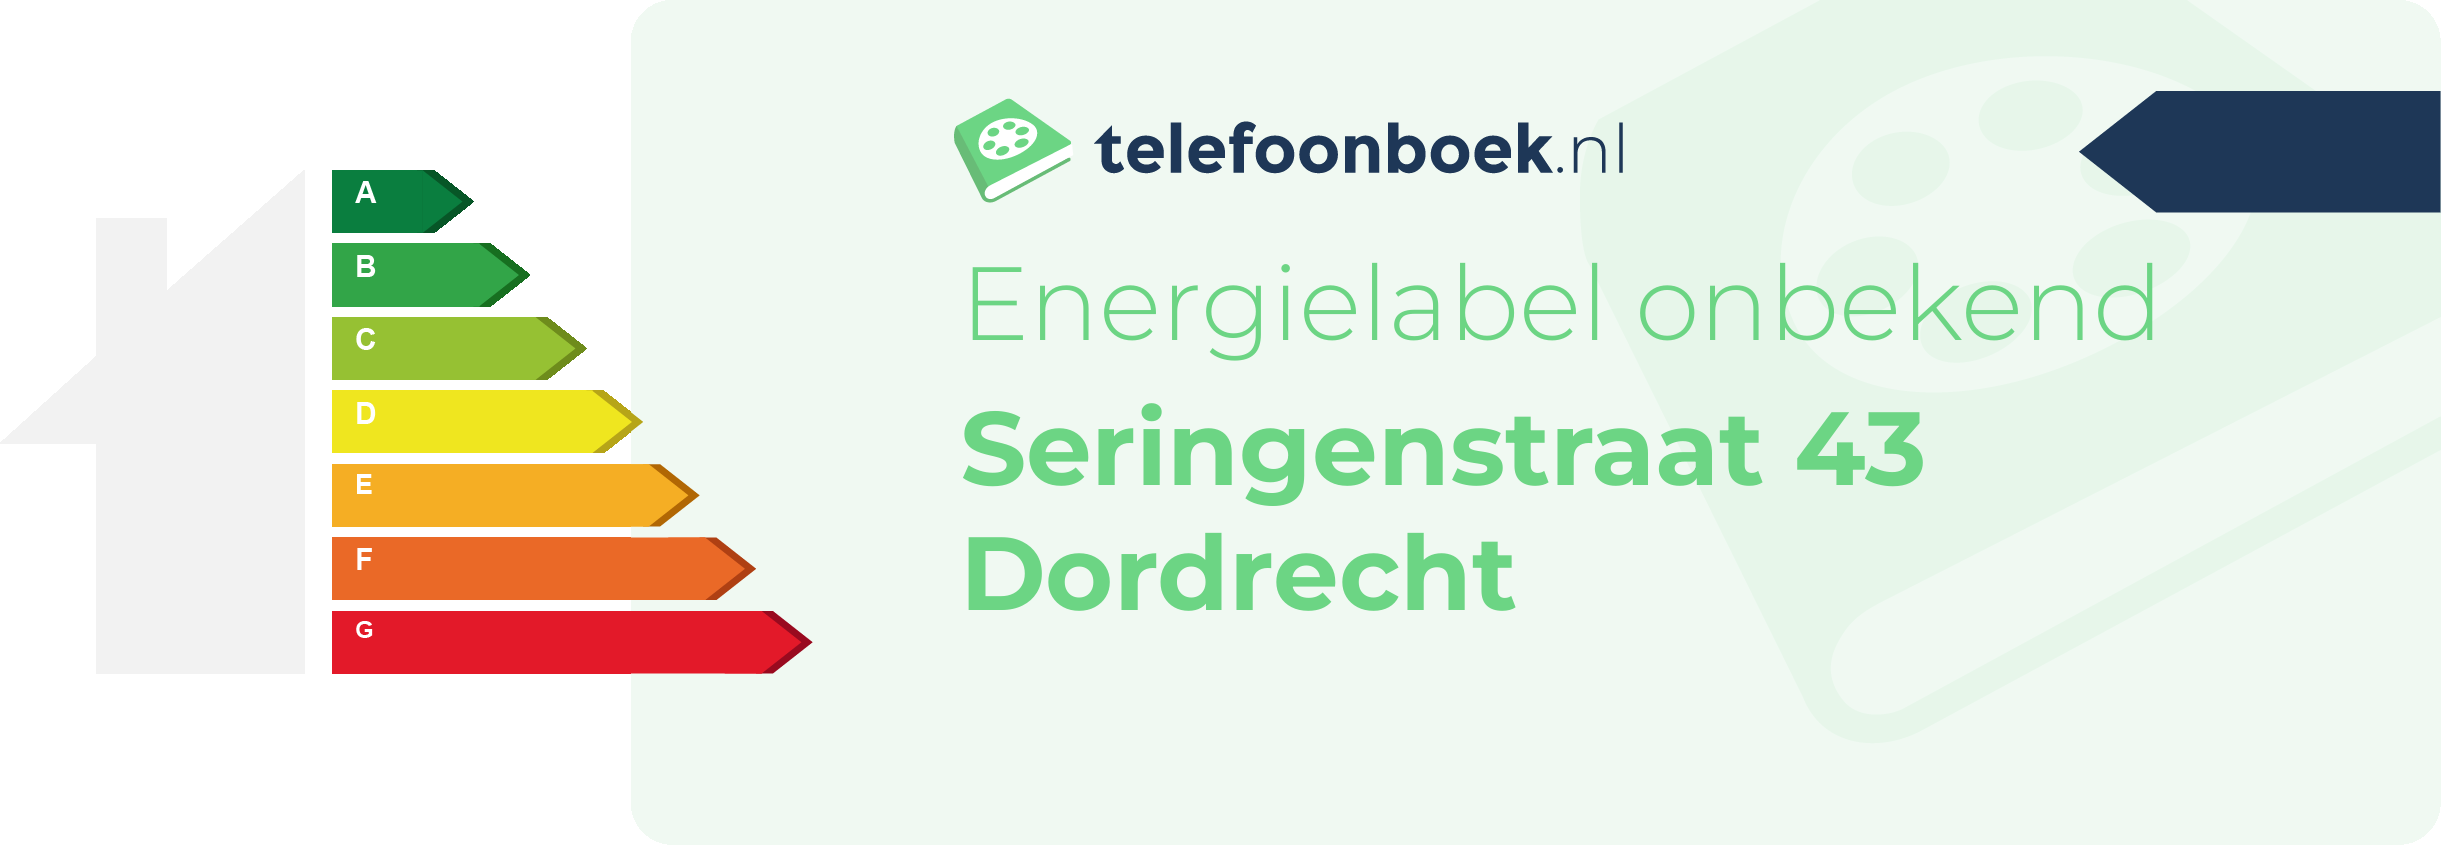 Energielabel Seringenstraat 43 Dordrecht